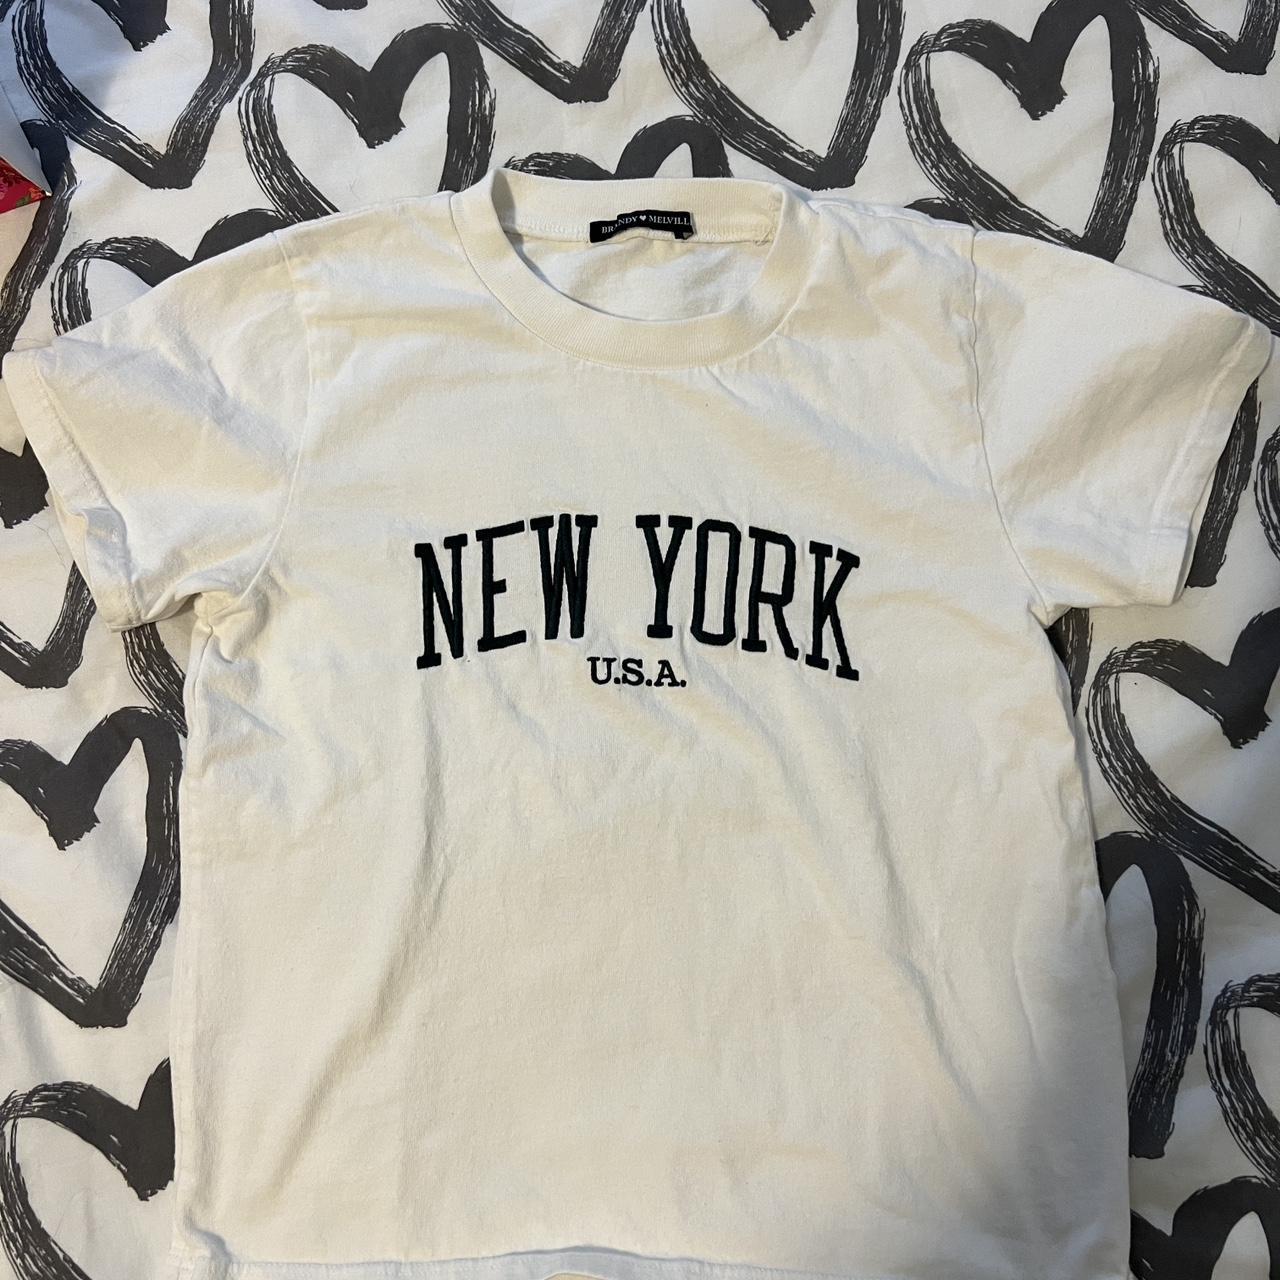 Brandy Melville T-shirt New York - Depop